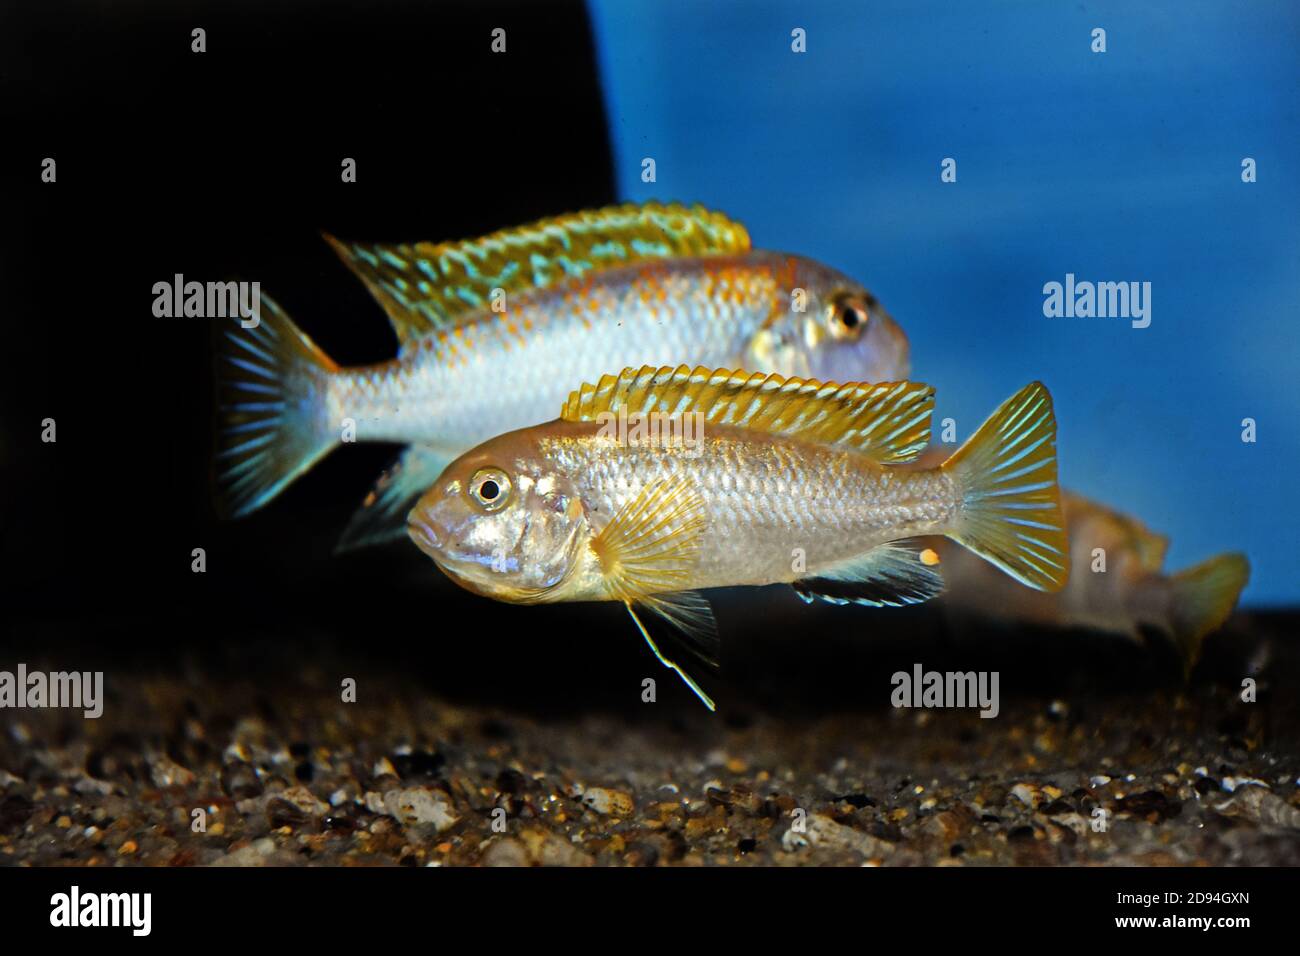 The Perlmutt cichlid fish - labidochromis perlmutt Stock Photo